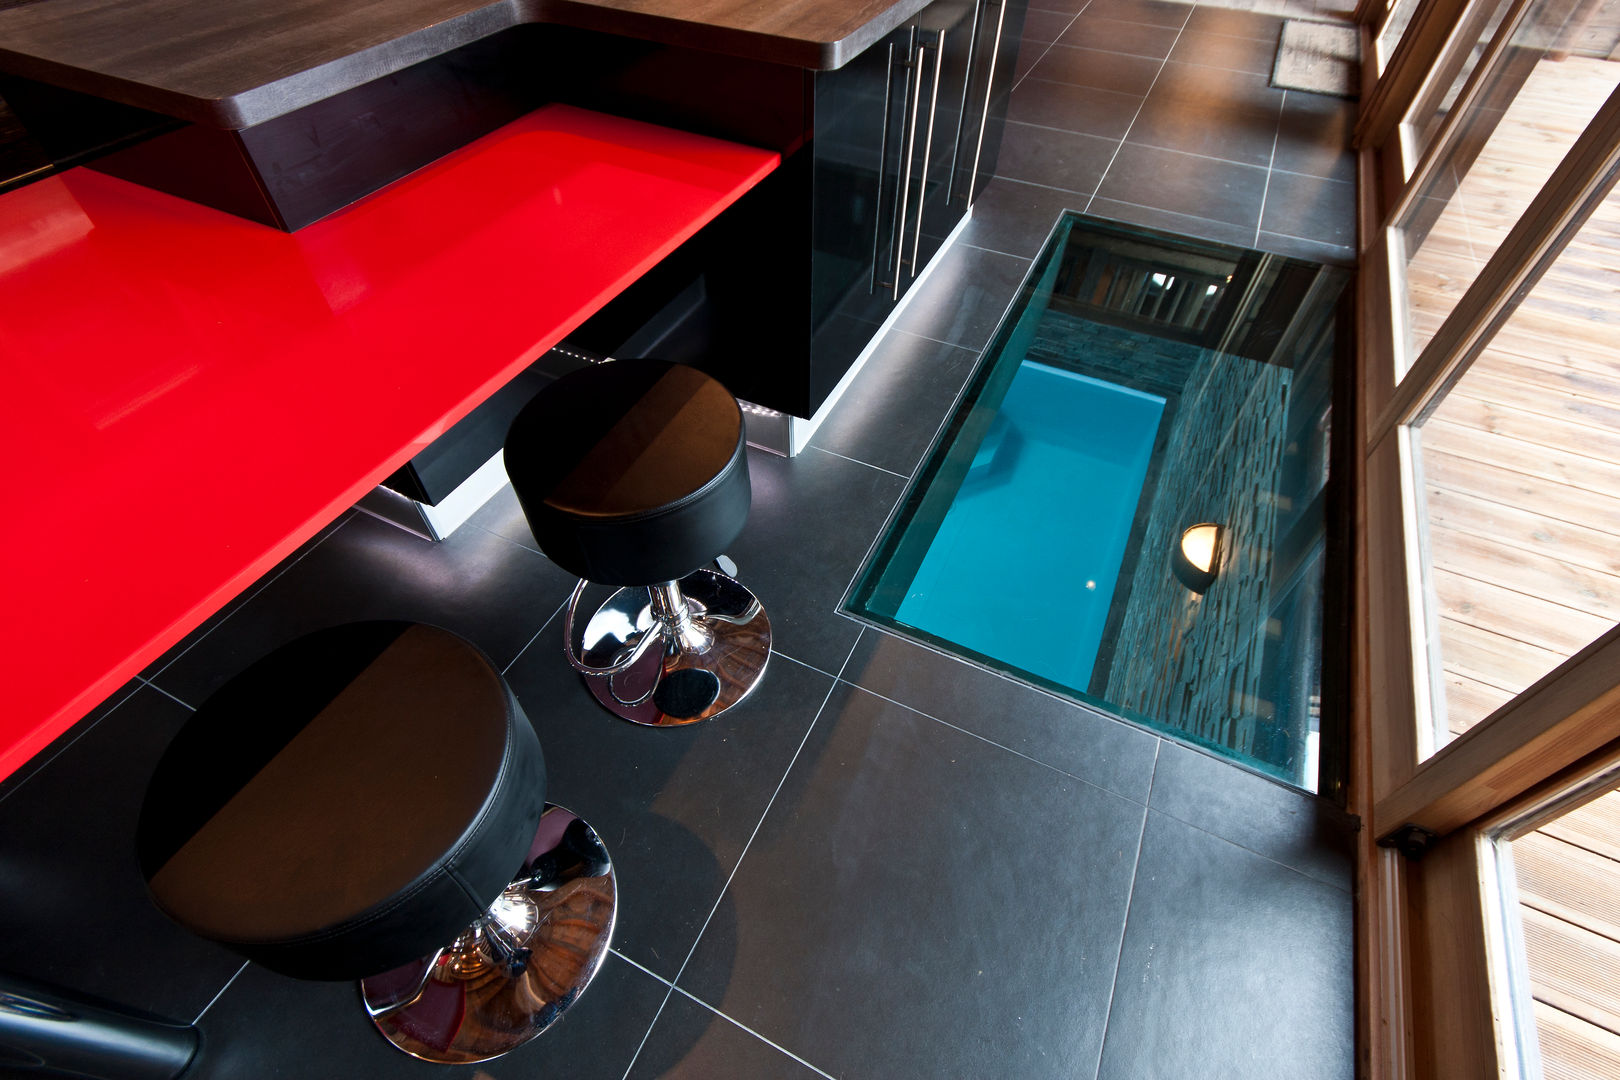 Chalet de Claude: un chalet de luxe, mais distinctif avec un intérieur en rouge et noir, shep&kyles design shep&kyles design Country style kitchen